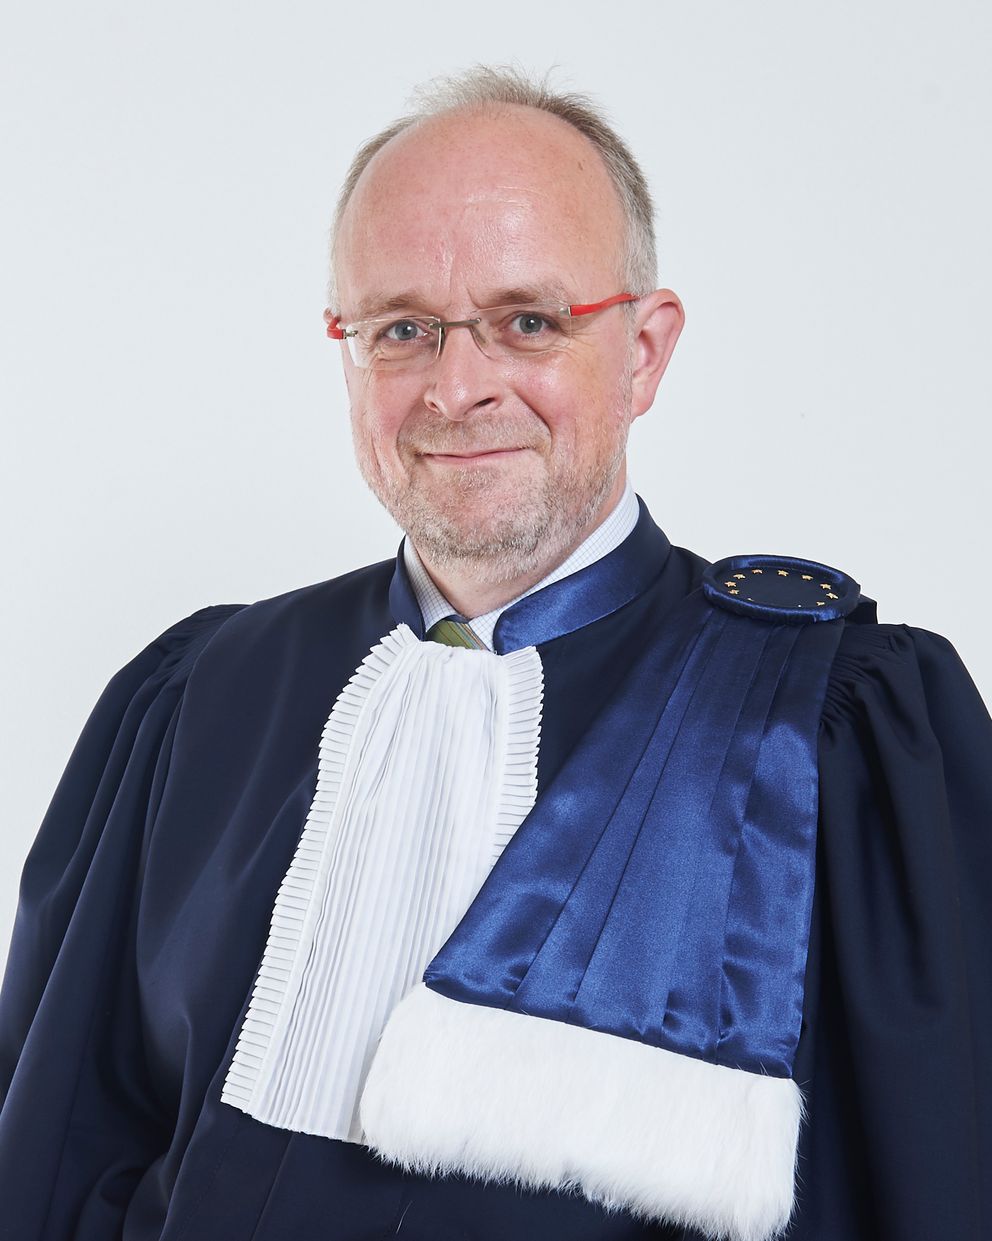 Judge Tim Eicke